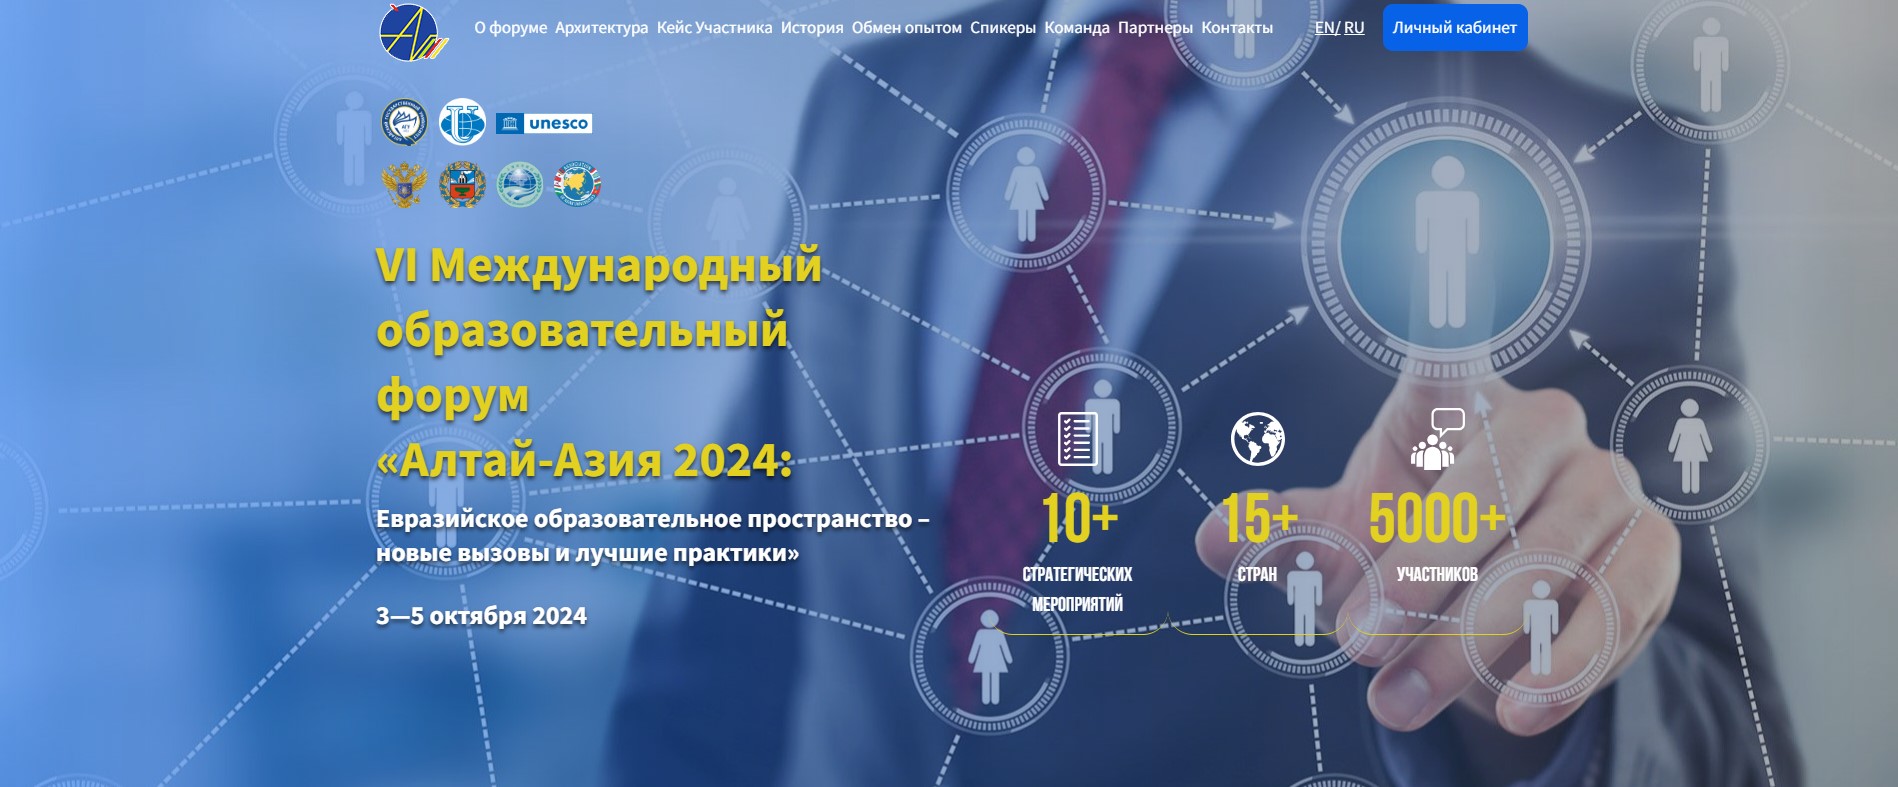 Дан старт регистрации на VI Международный образовательный форум «Алтай-Азия 2024»